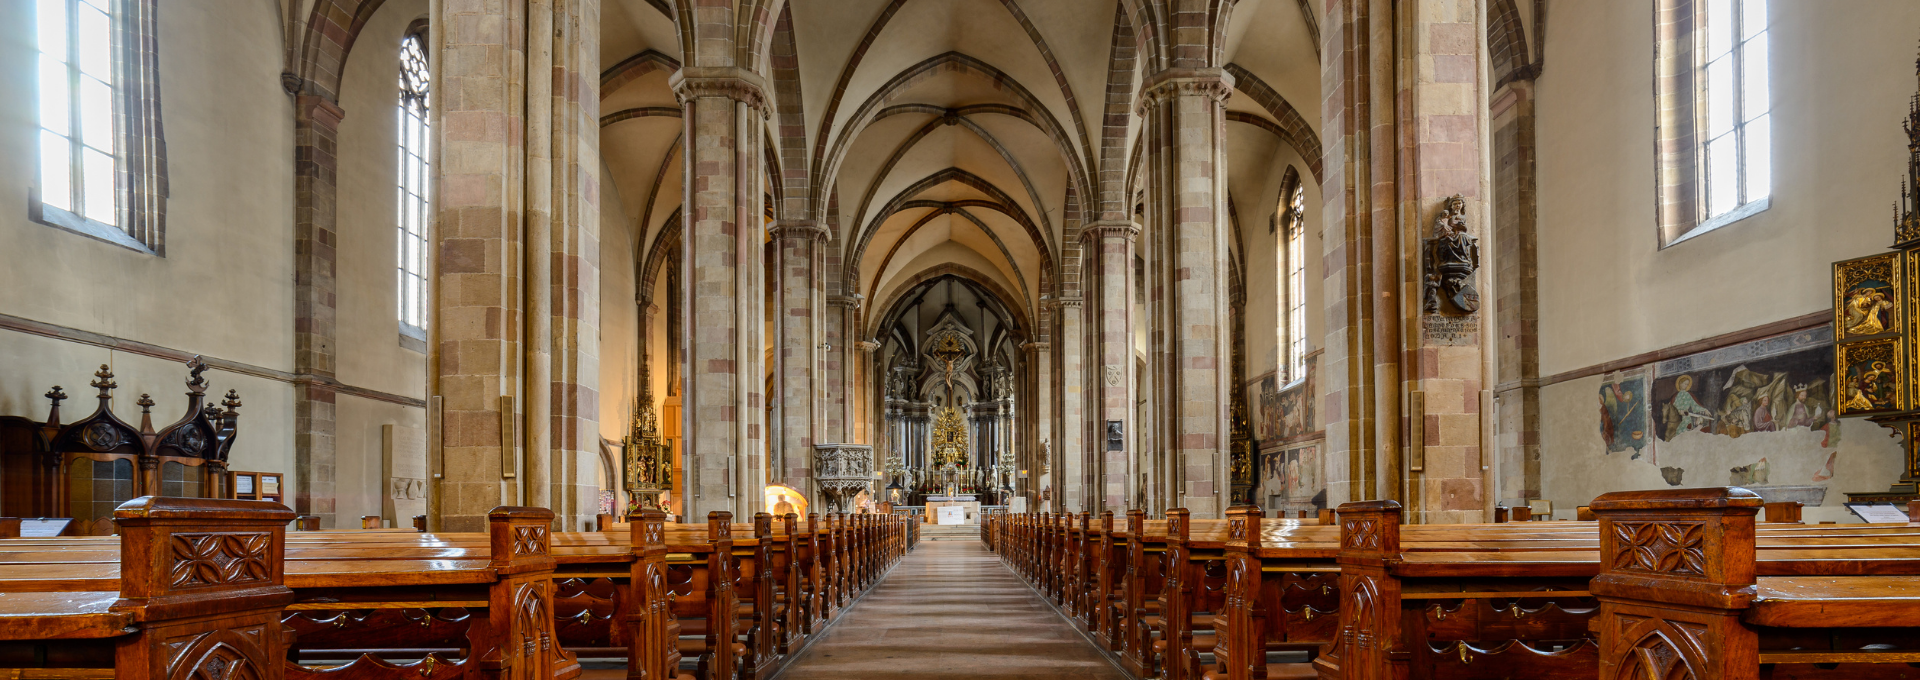 Der Dom als Wahrzeichen der Südtiroler Hauptstadt Bozen